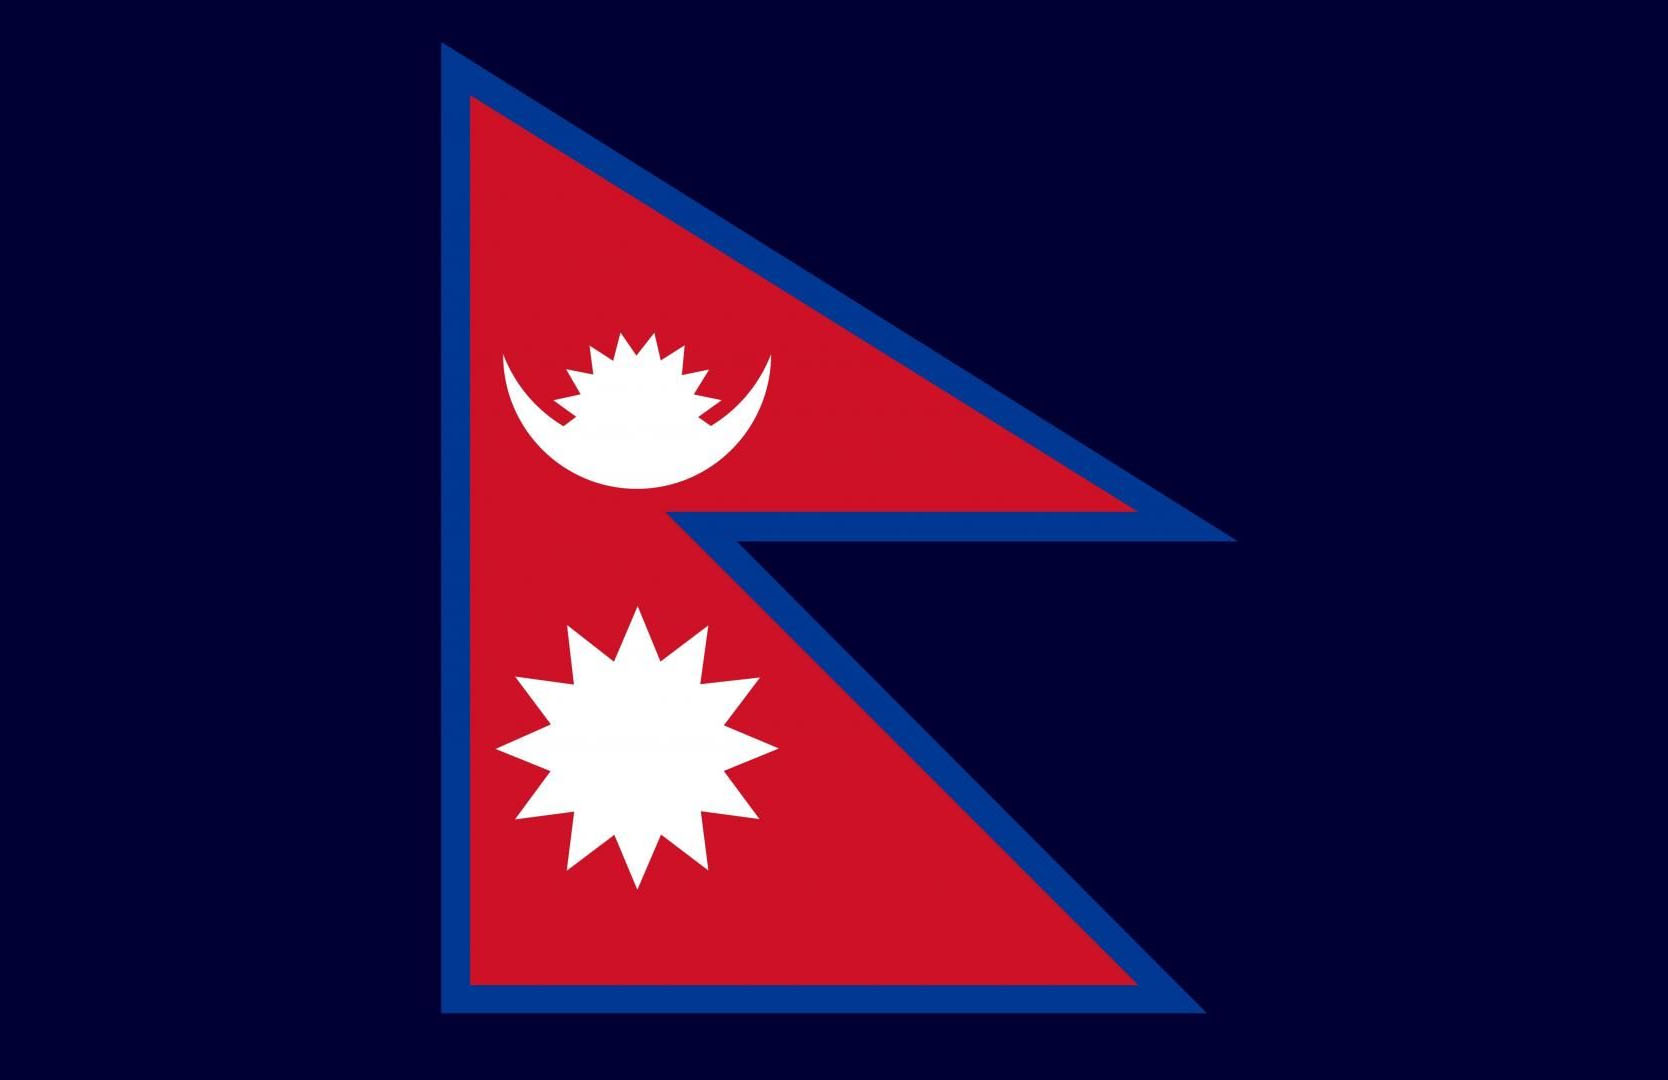 नेपाल में अप्रैल और मई में होंगे मध्यावधि चुनाव, ओली और कमल दहल, माधव कुमार के बने गुट